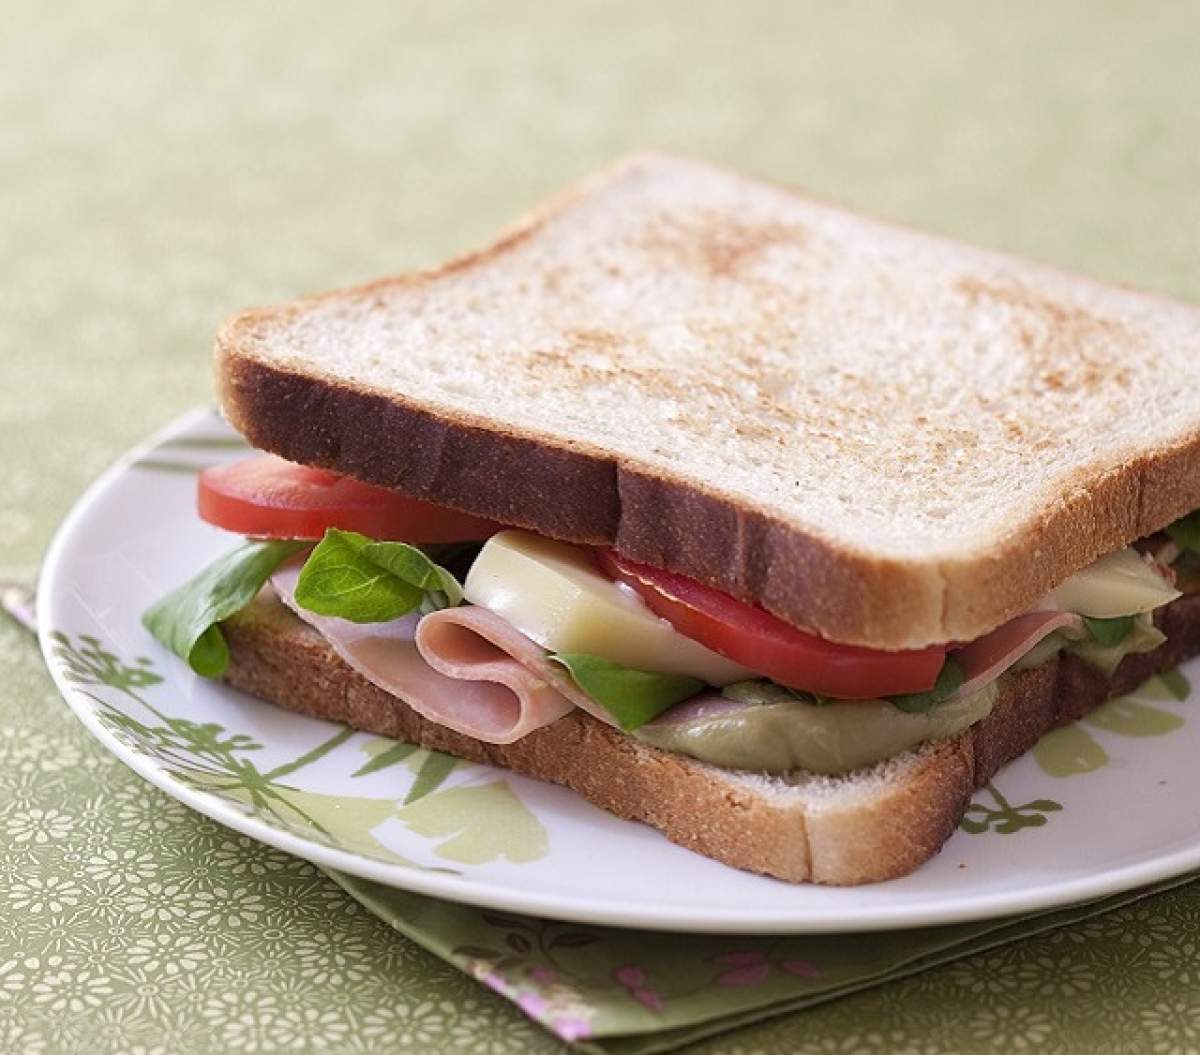 Îţi va provoca greaţă! Ce a găsit o fetiţă de şapte ani în sandwich-ul pe care-l mânca zilnic